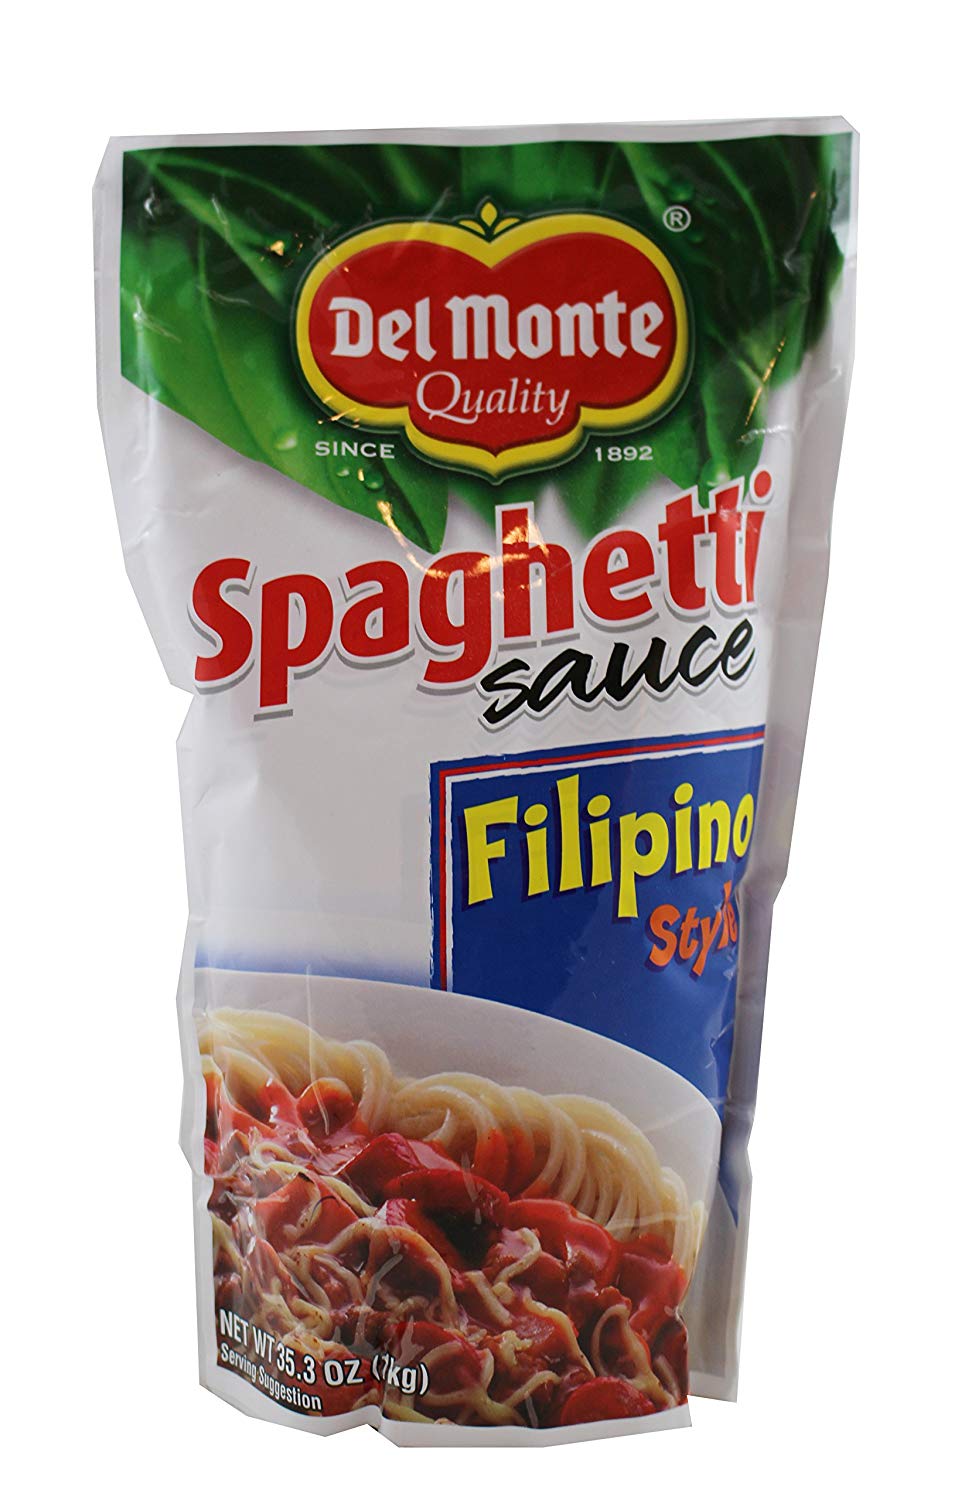 Spaghetti Sauce Filipino Style   1kg Del Monte